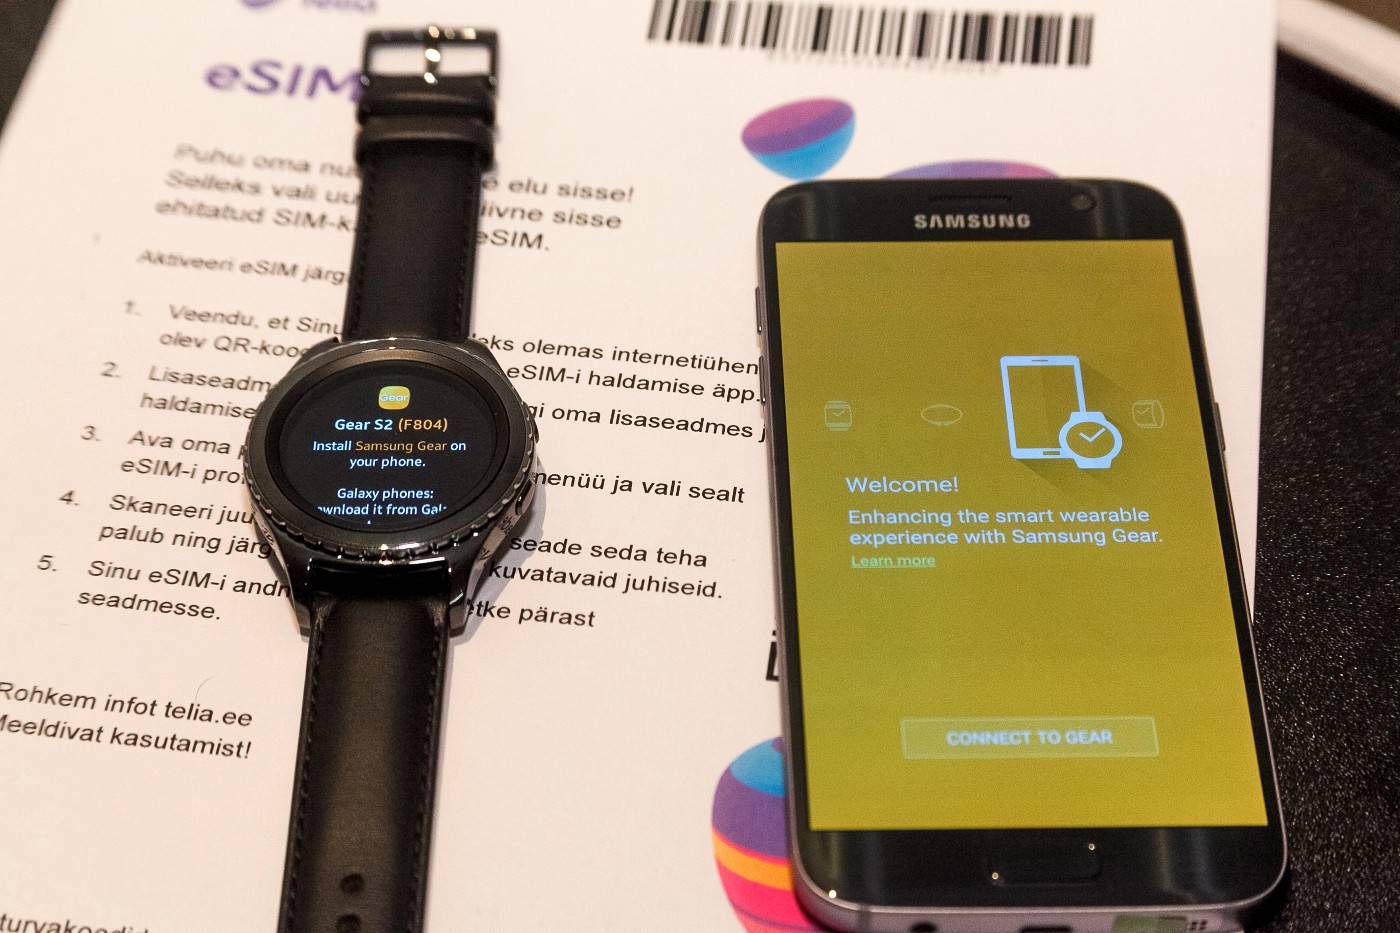 Galaxy watch esim. Часы Samsung e SIM. Часы для самсунг s20 Fe. Есим на галакси вотч. Смартфон с поддержкой e-SIM.